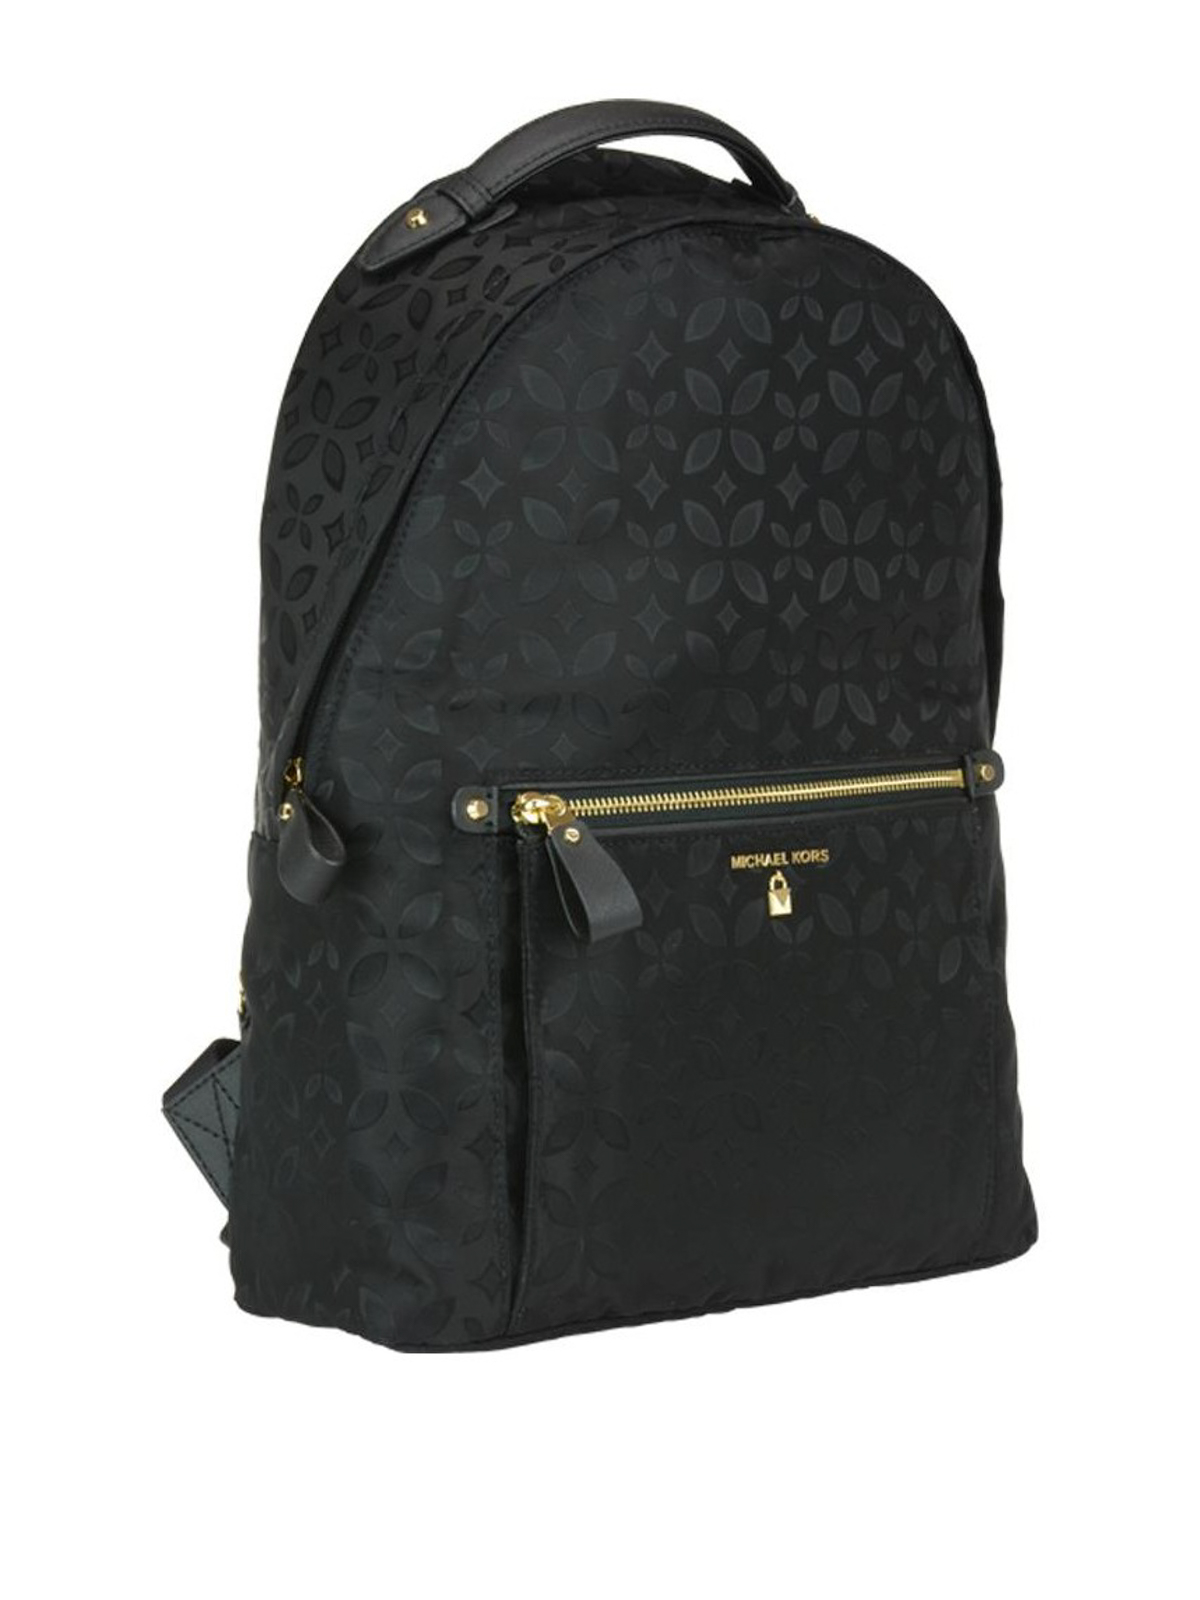 Michael Kors Kelsey Nylon Backpack in Black